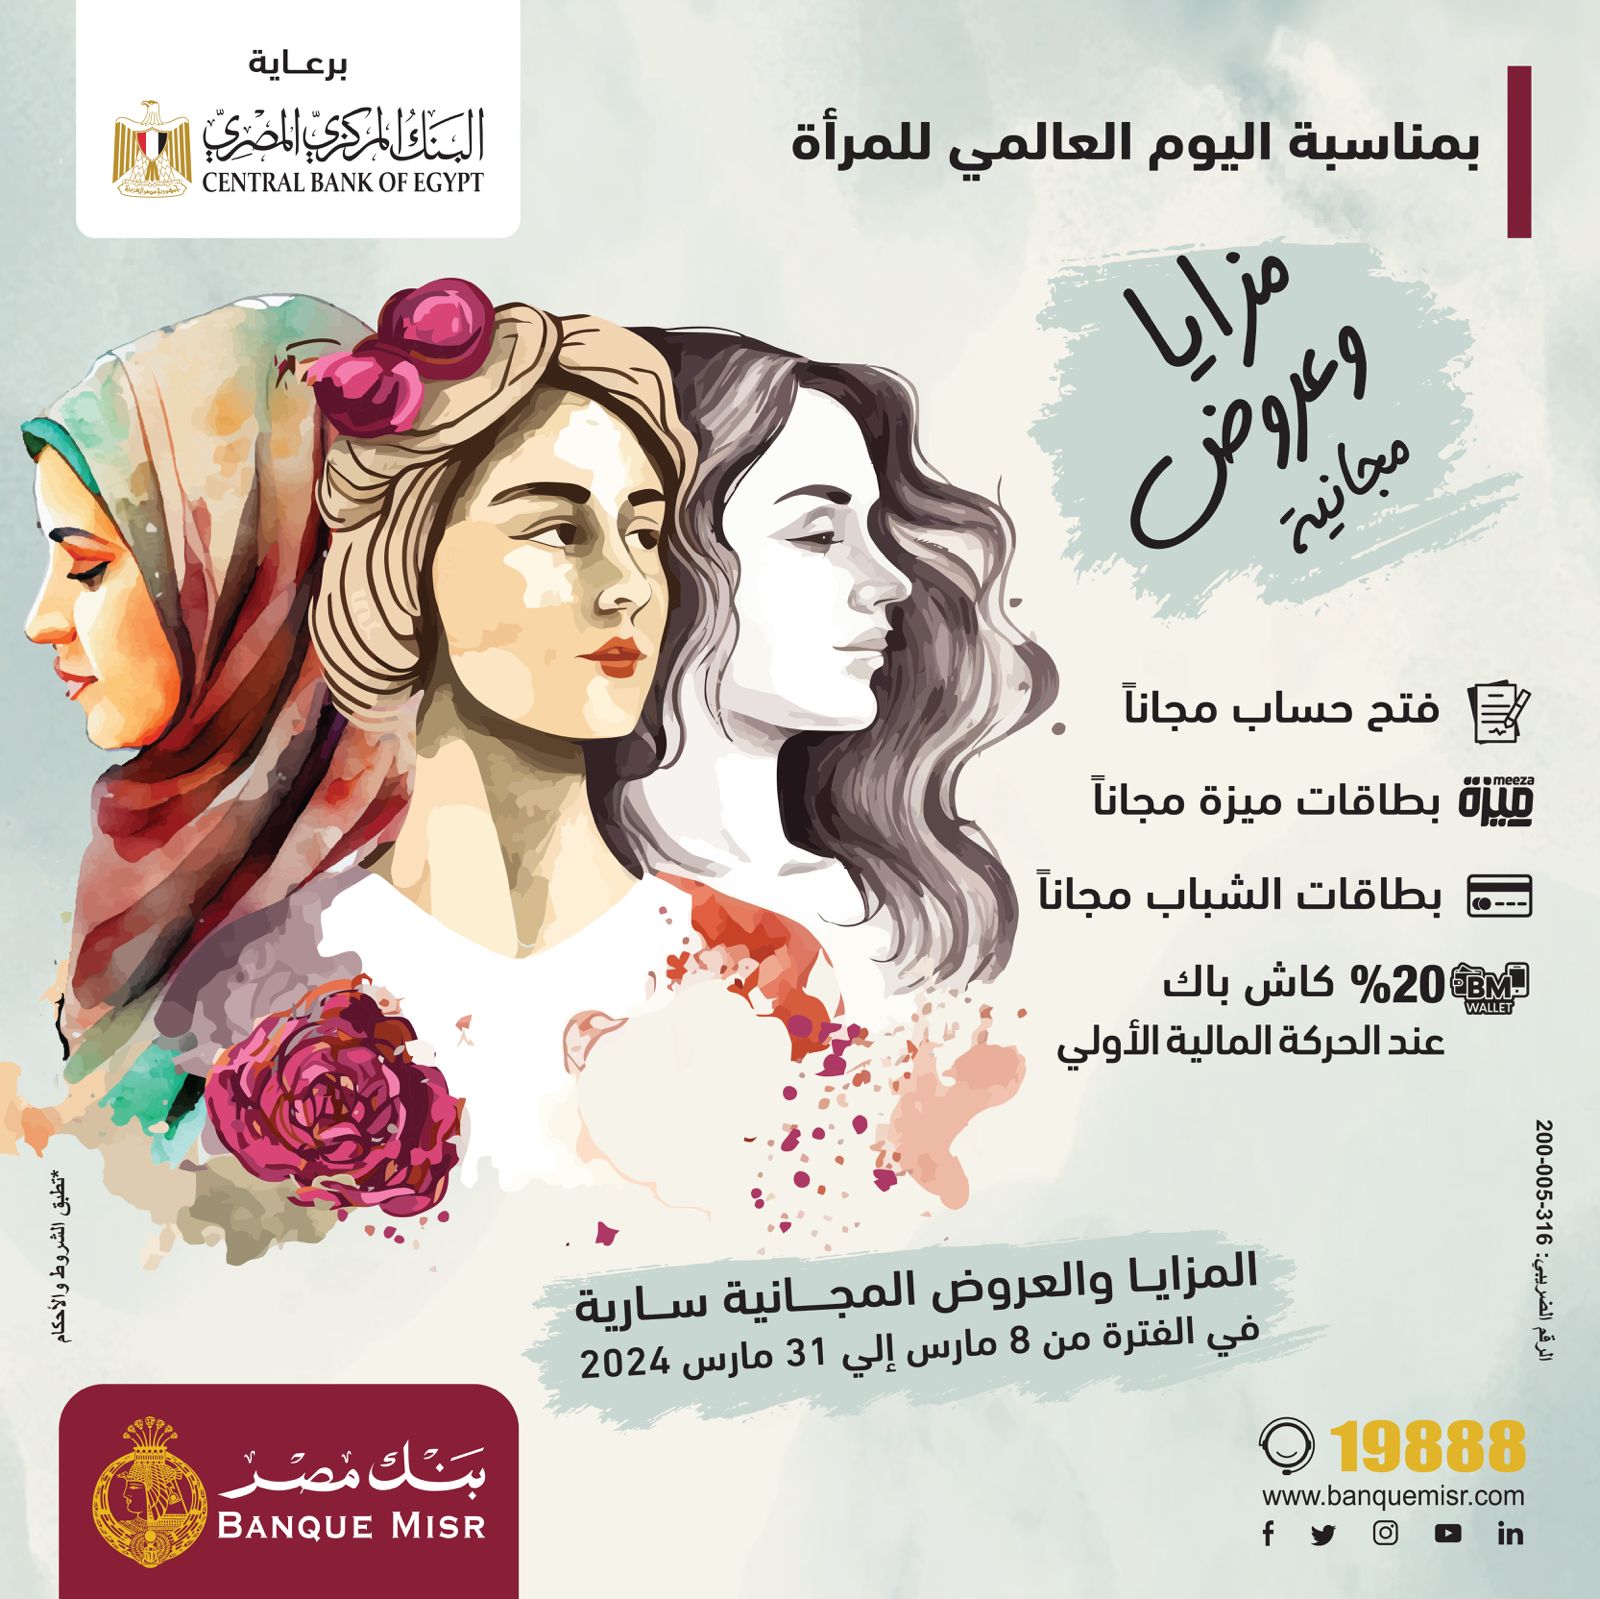 بنك مصر يشارك بفاعلية في «اليوم العالمي للمرأة» ويقدم  مزايا وعروض مجانية